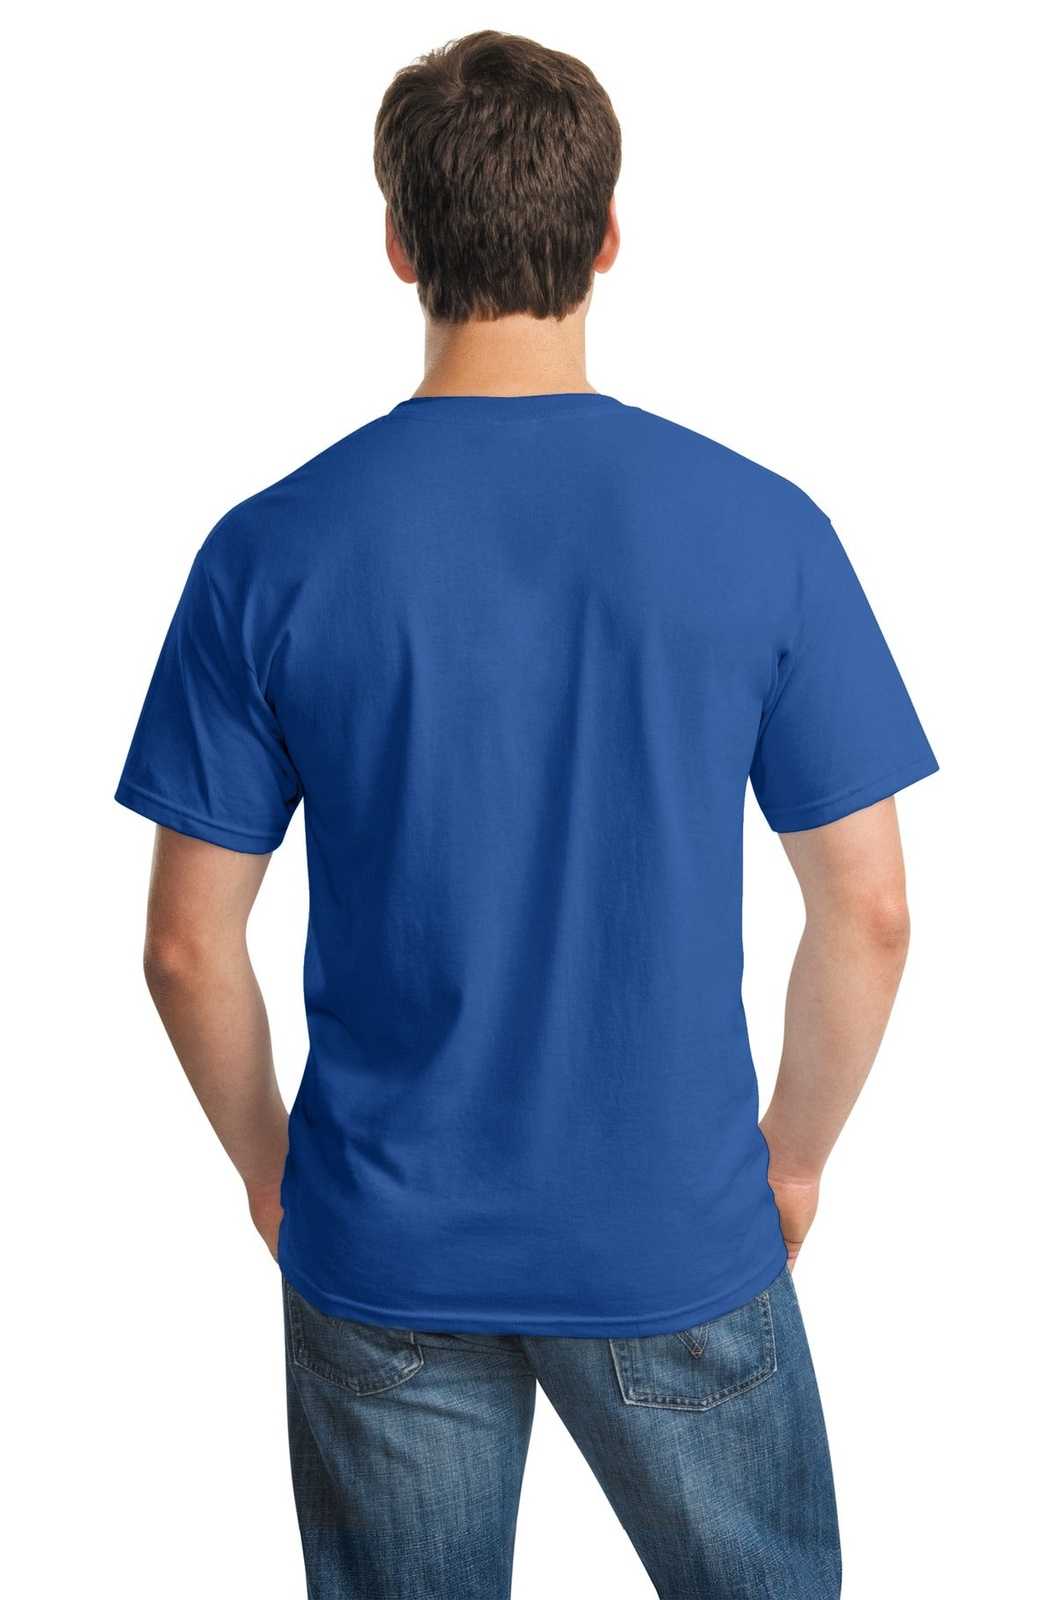 Gildan 5000 Heavy Cotton 100% Cotton T-Shirt - Neon Blue - HIT a Double